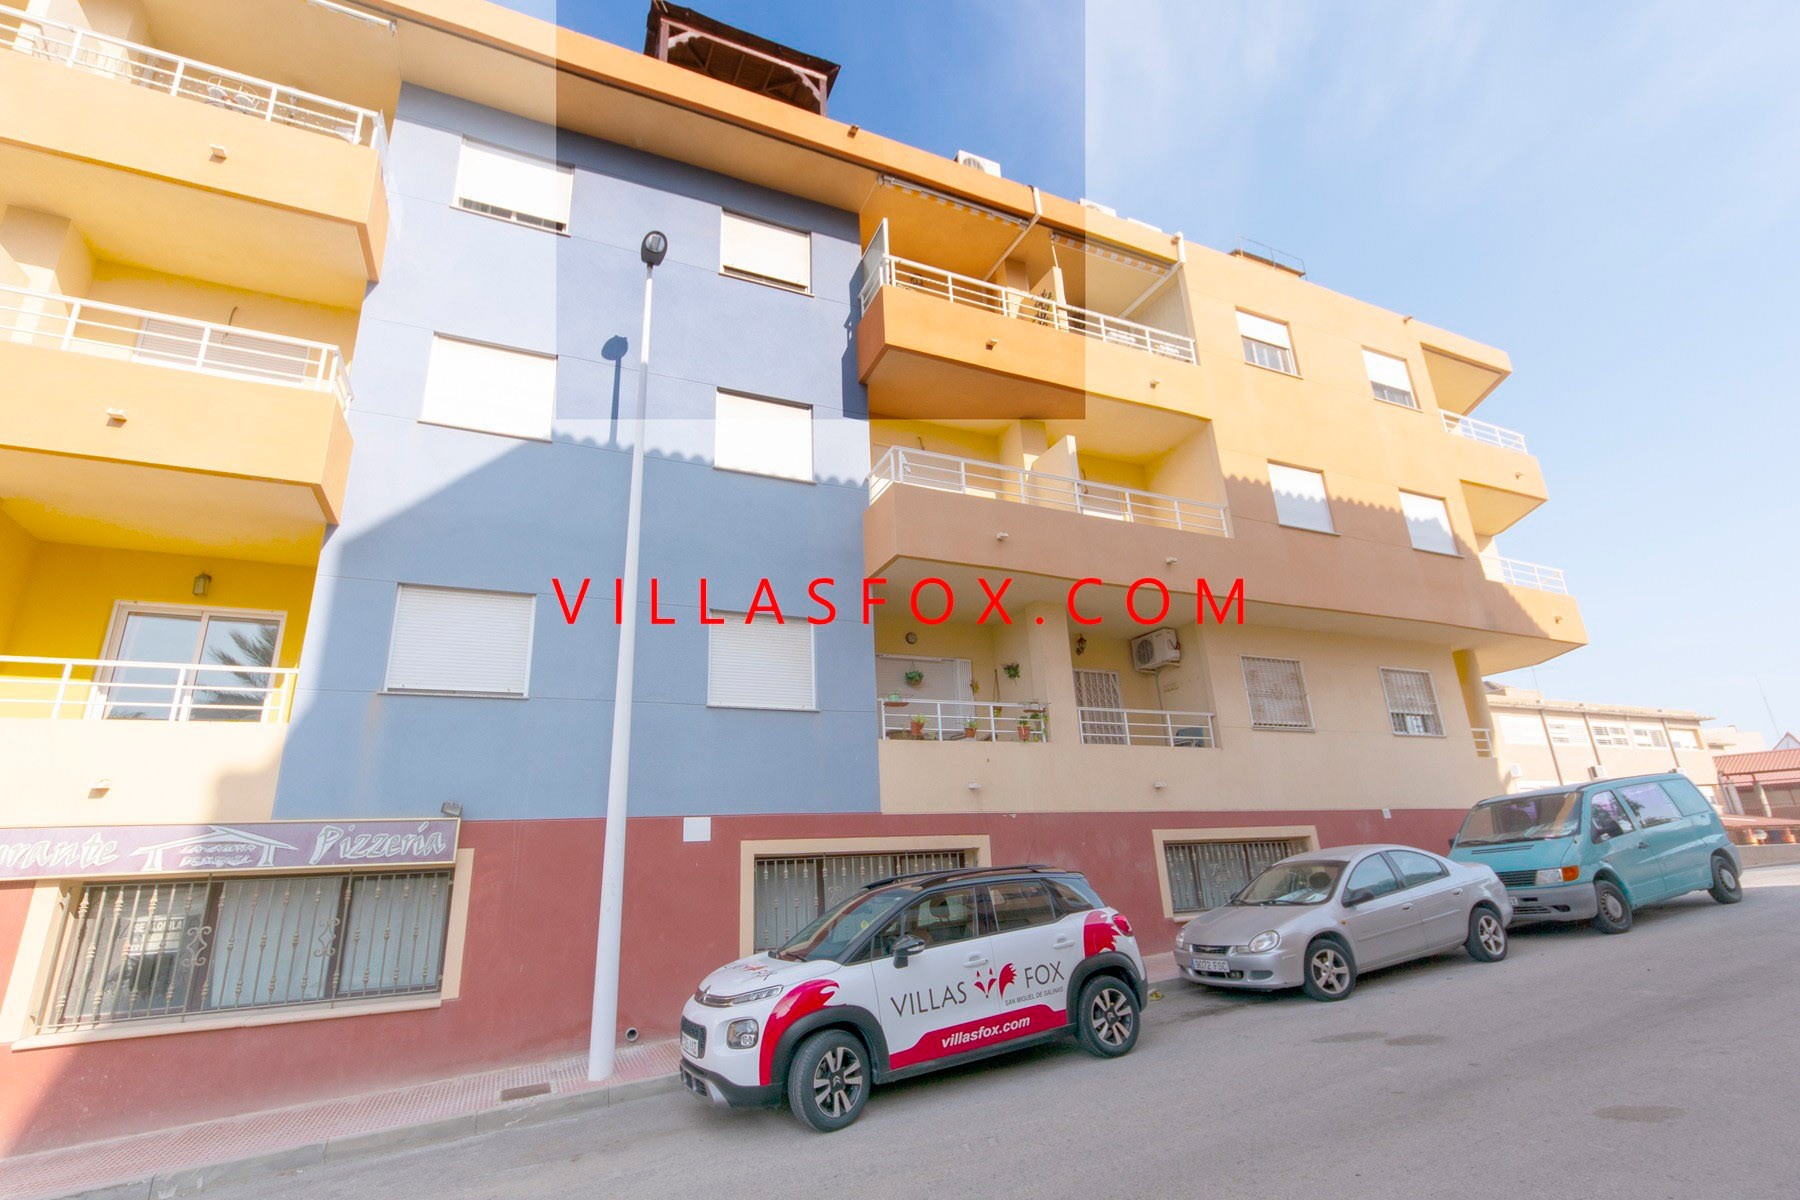 1 Apartament San Miguel de Salinas w centrum miasta, Villas Fox najlepsi agenci nieruchomości 611039449965e